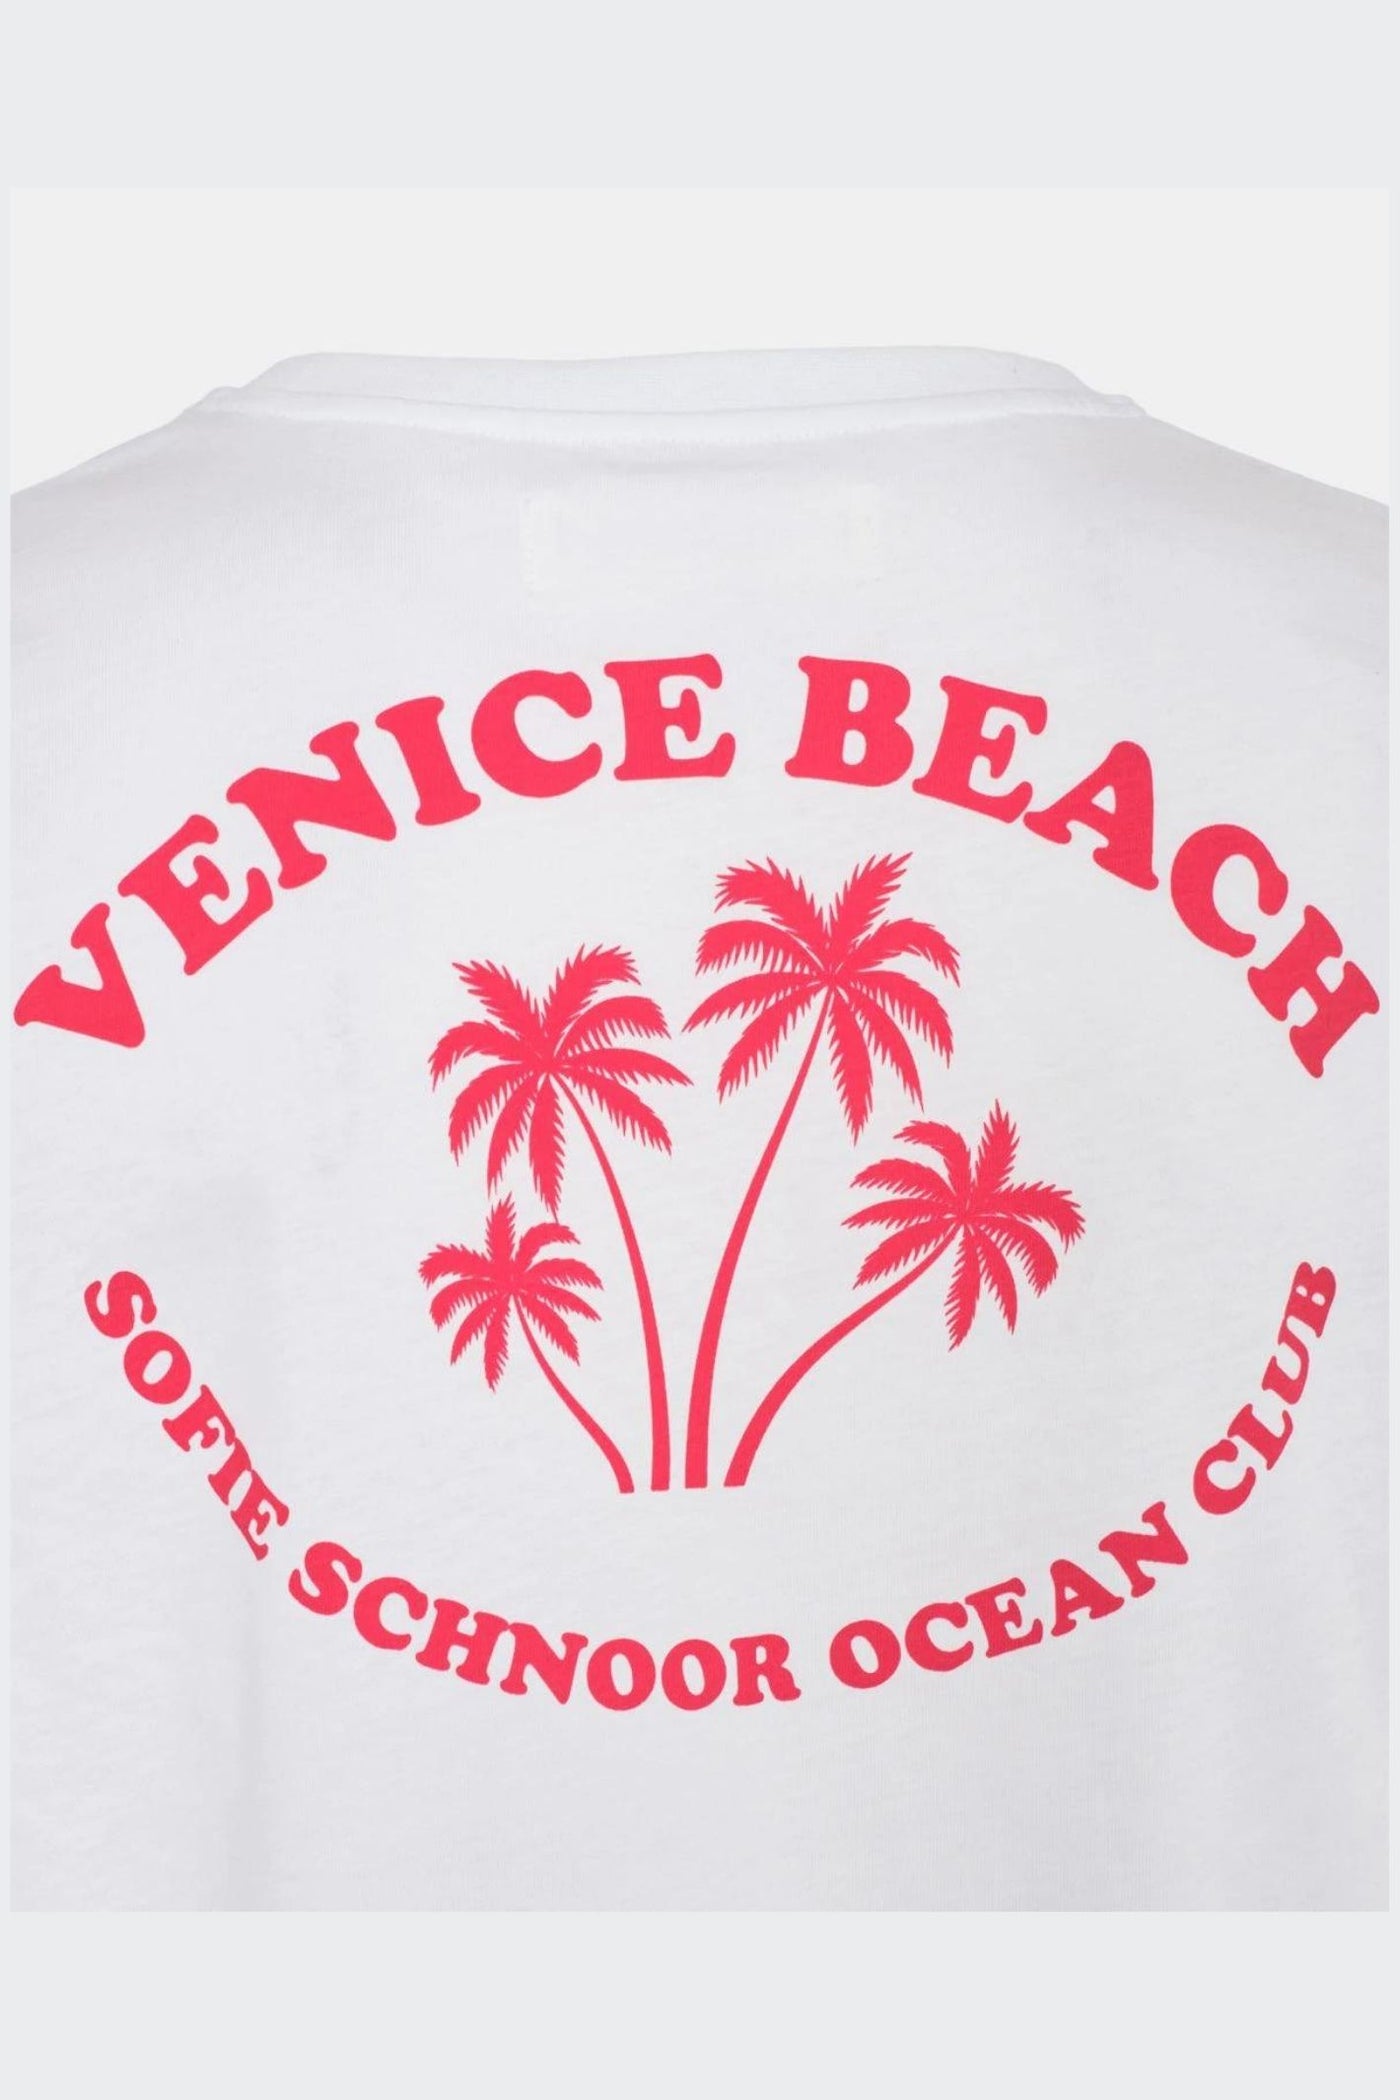 Sofie Schnoor Ocean Club T-shirt | Jezabel Boutique